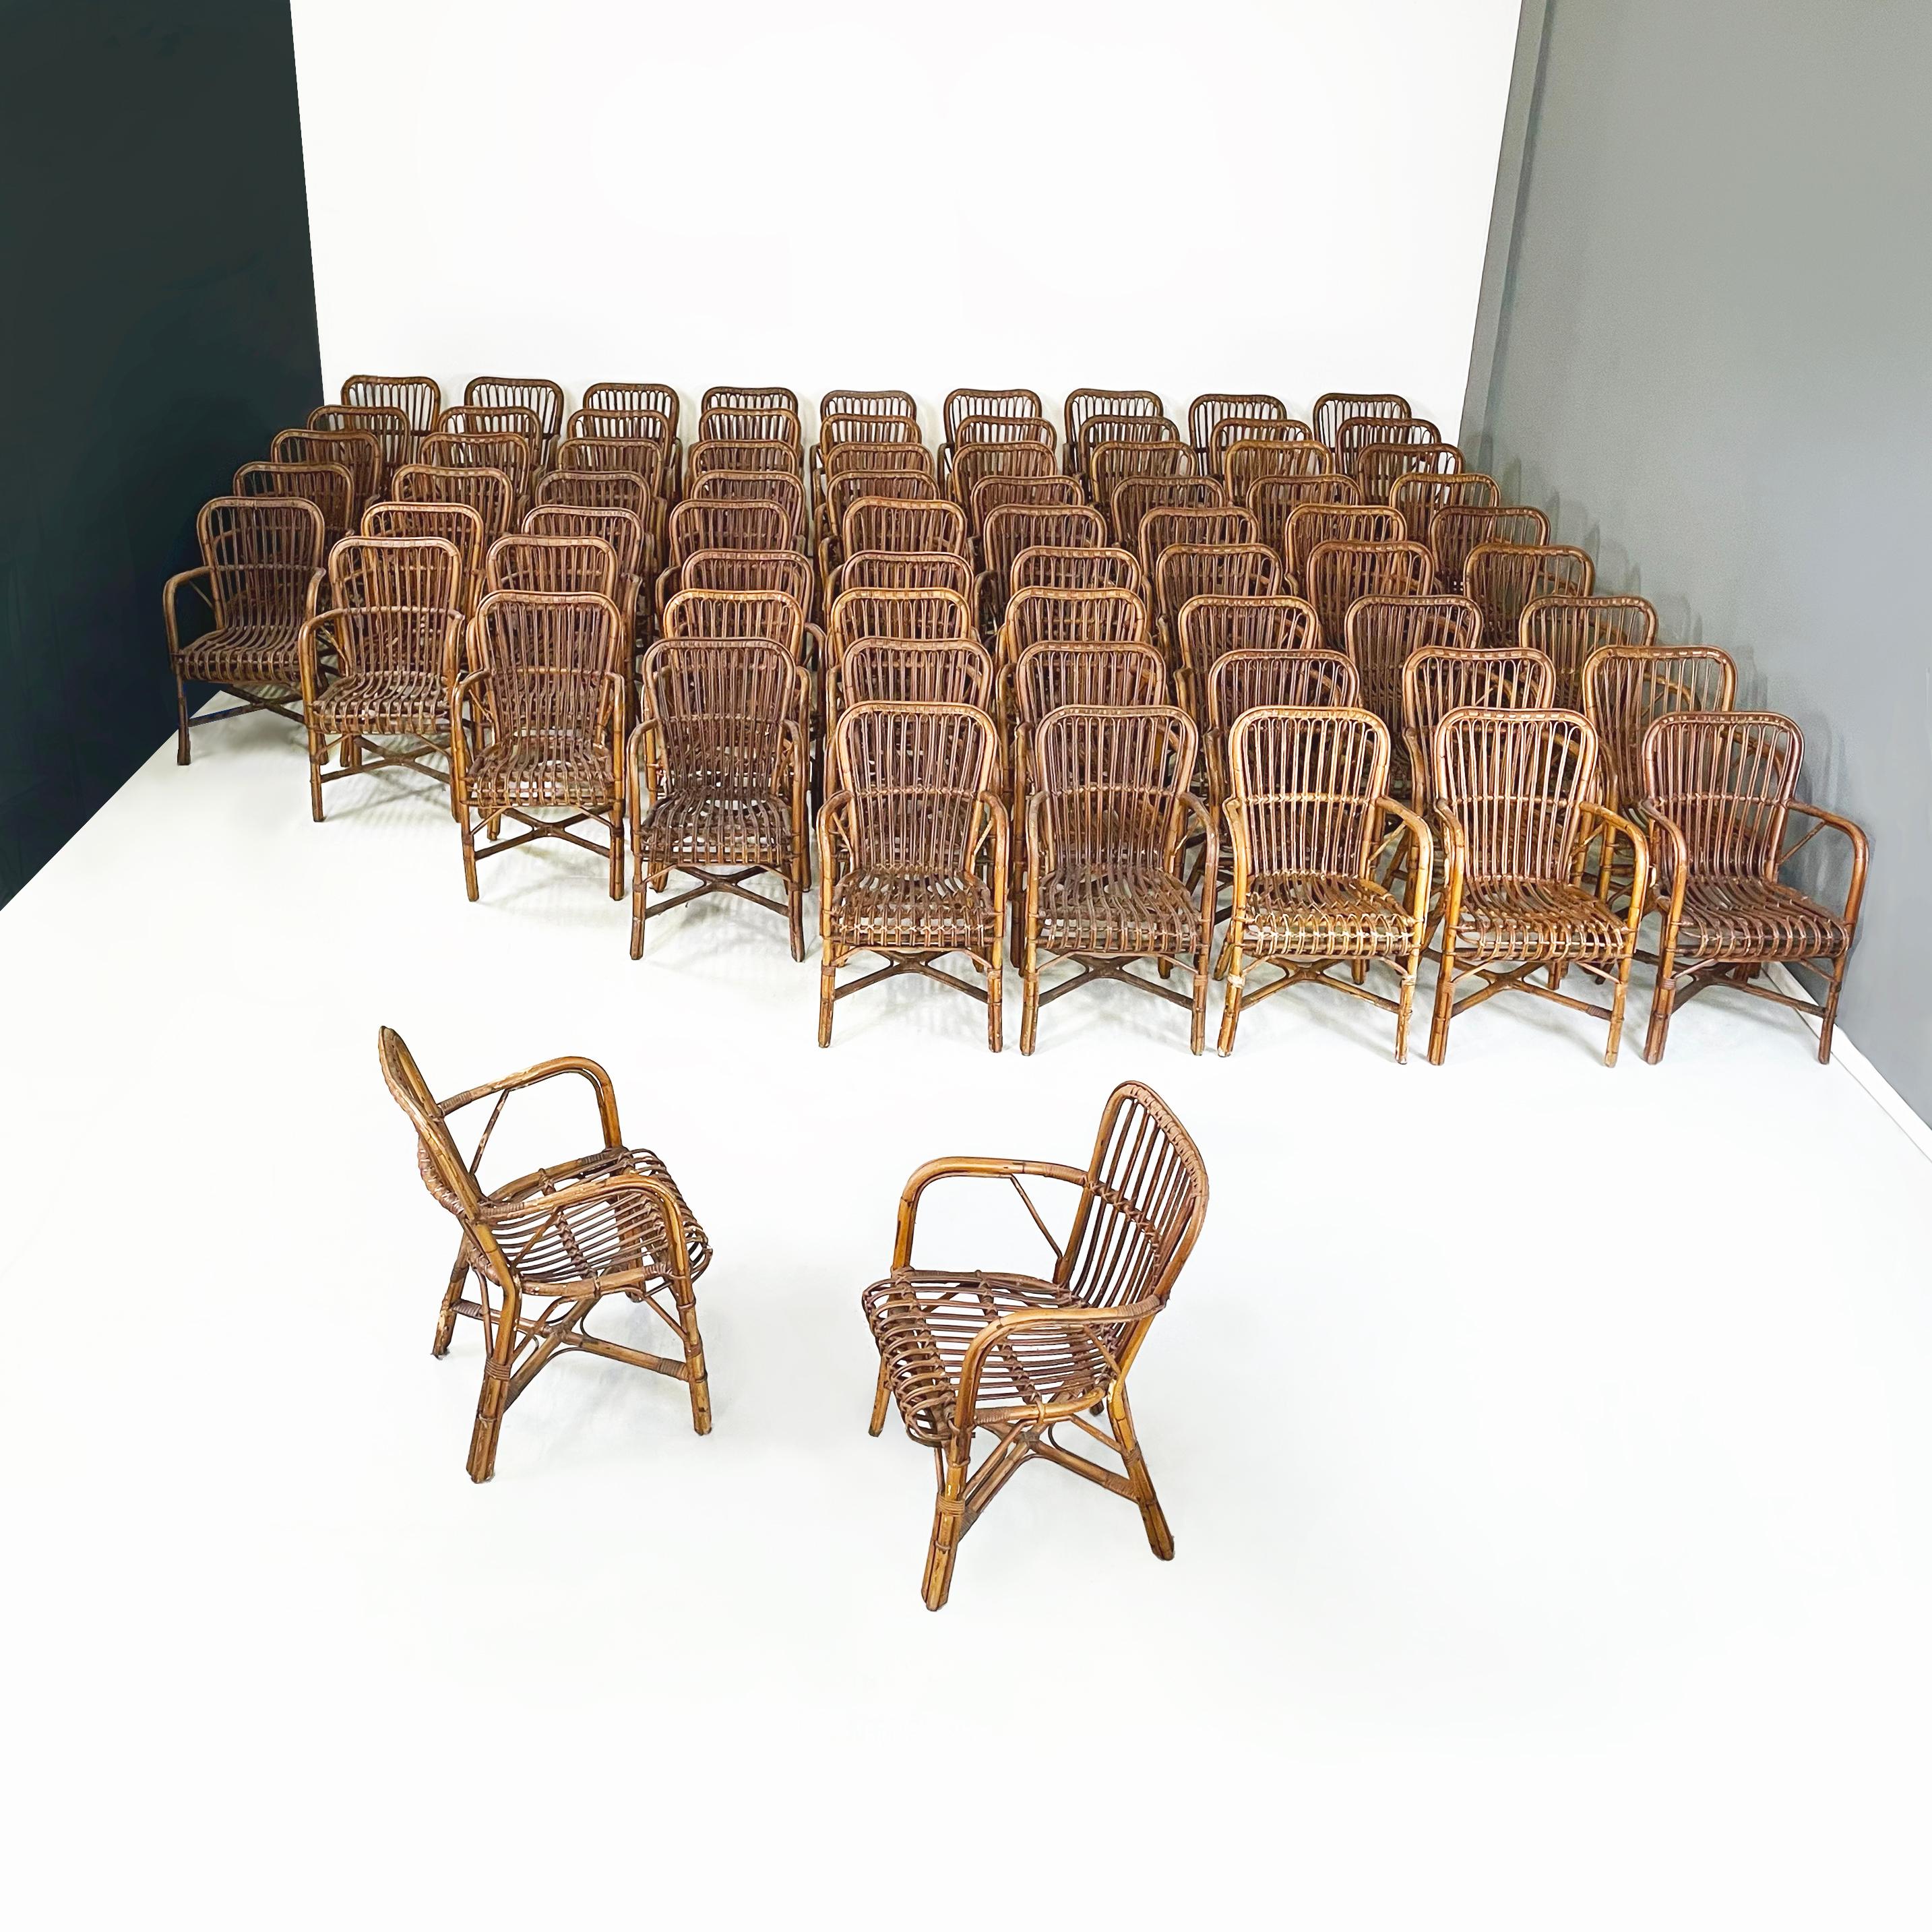 Italienische Outdoor-Sessel aus Bambus und Rattan aus der Mitte des Jahrhunderts, 1960er Jahre
Set aus 61 Sesseln mit geschwungenen Armlehnen aus fein gewebtem Bambus in verschiedenen Farbtönen. Die Beine sind in der Mitte durch eine X-förmige